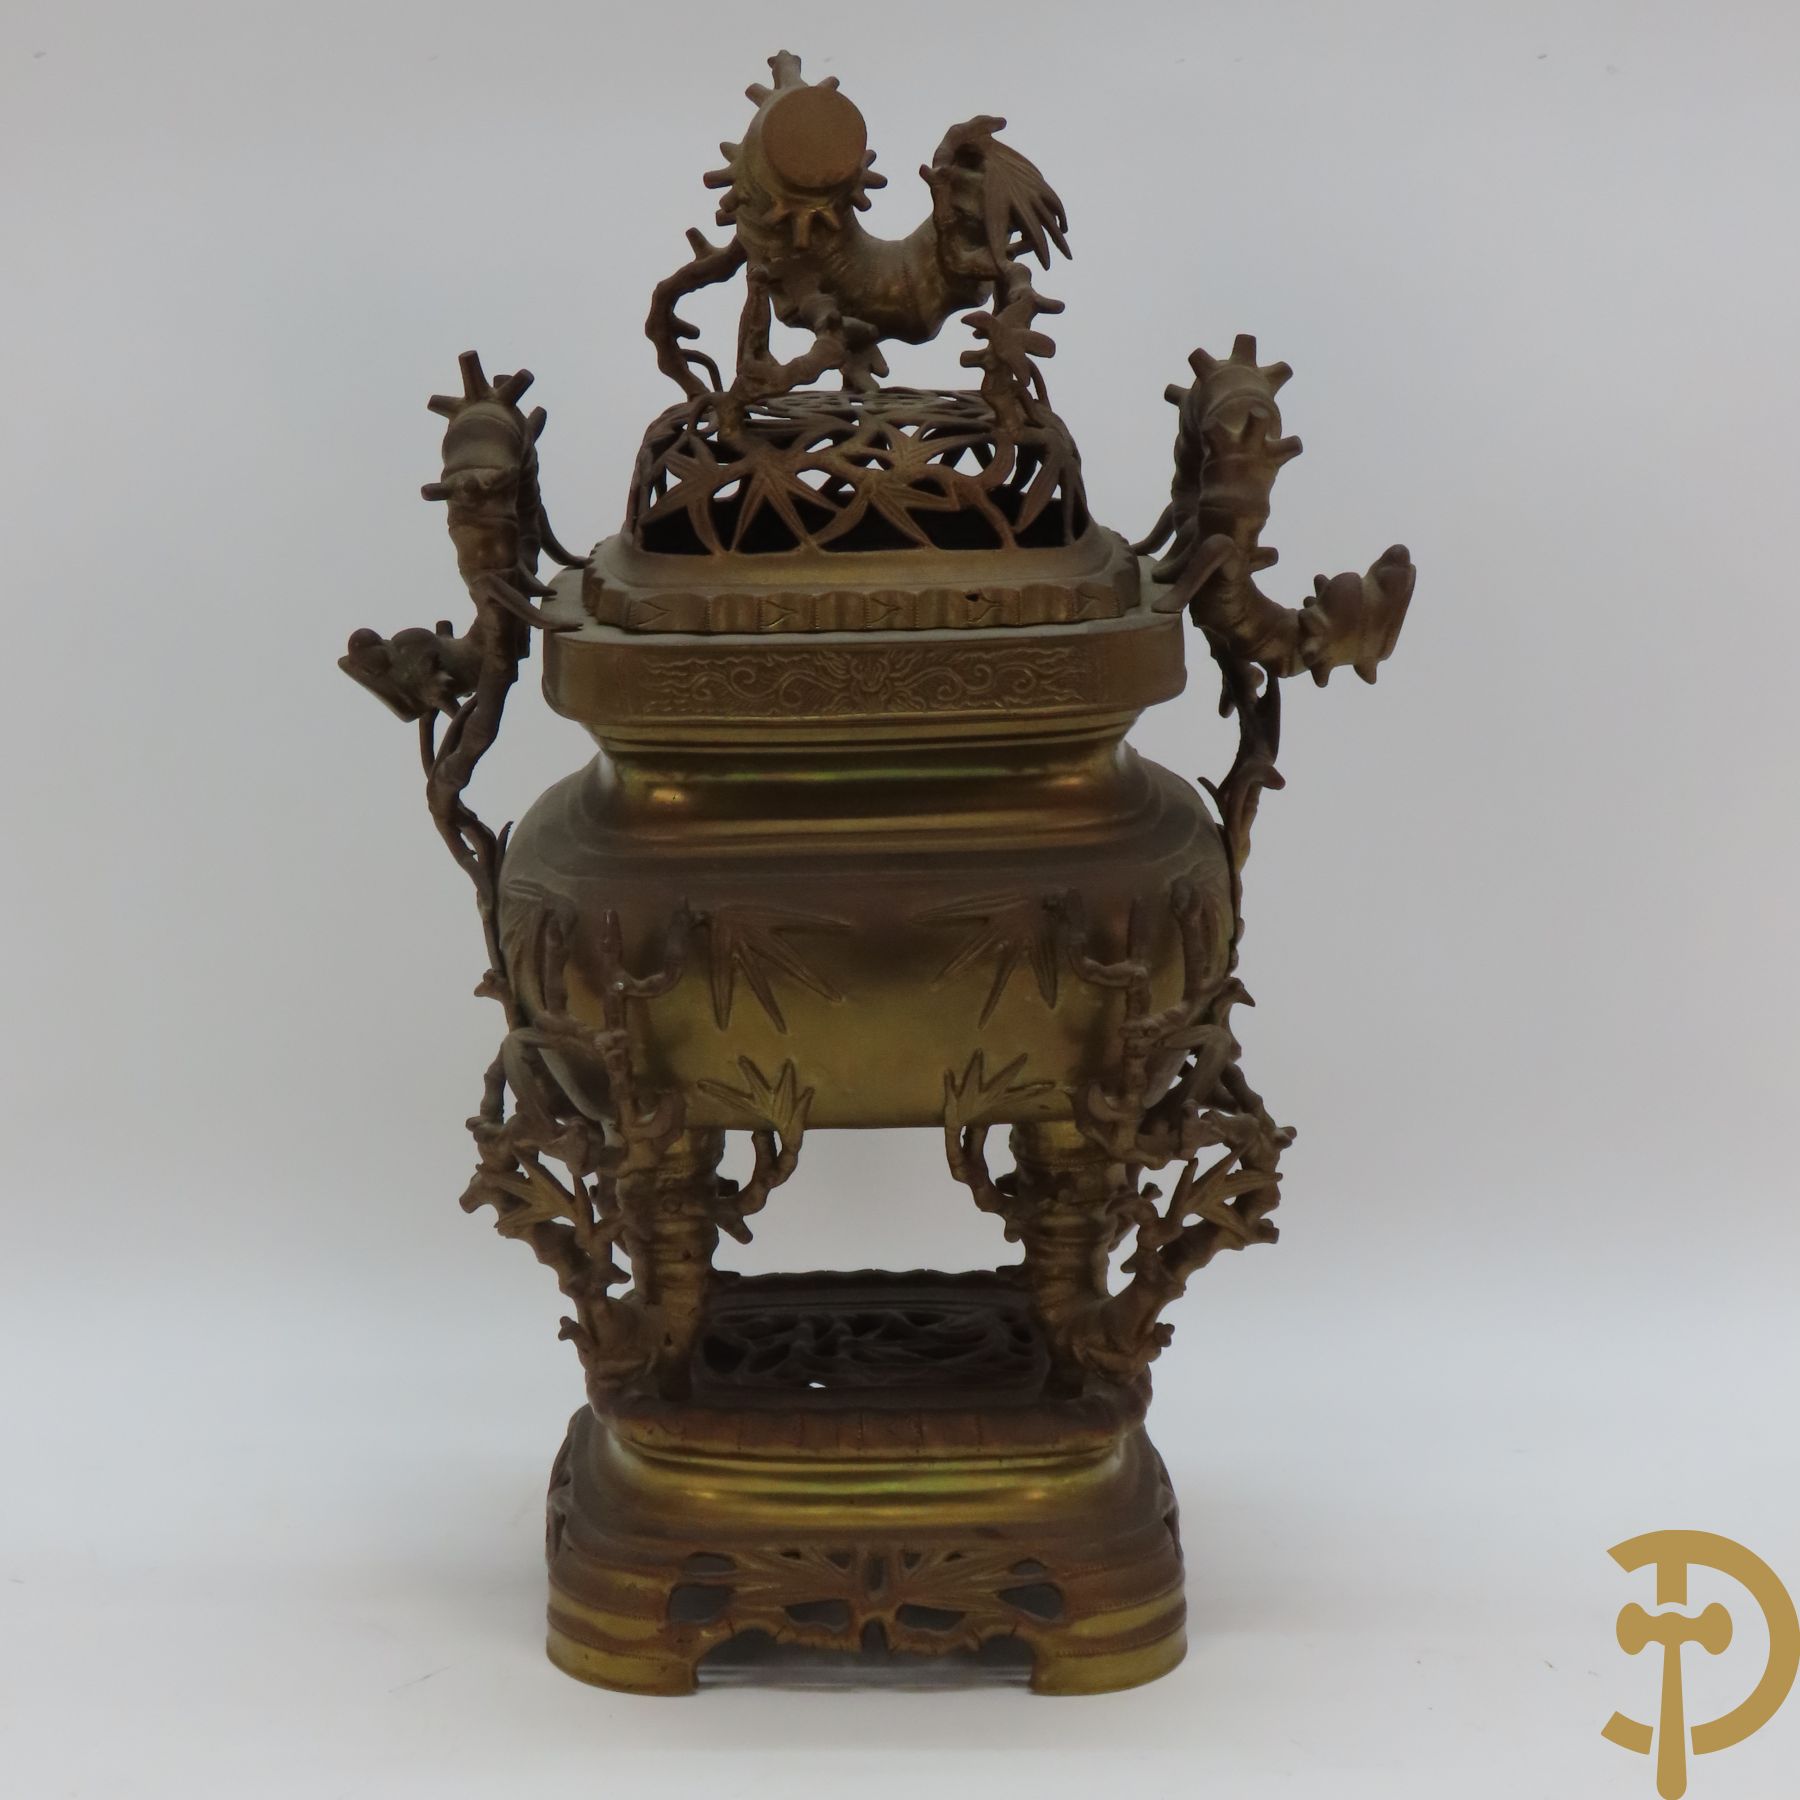 Aziatische bronzen drieledige brule parfum met natuurelementen en grillige figuren